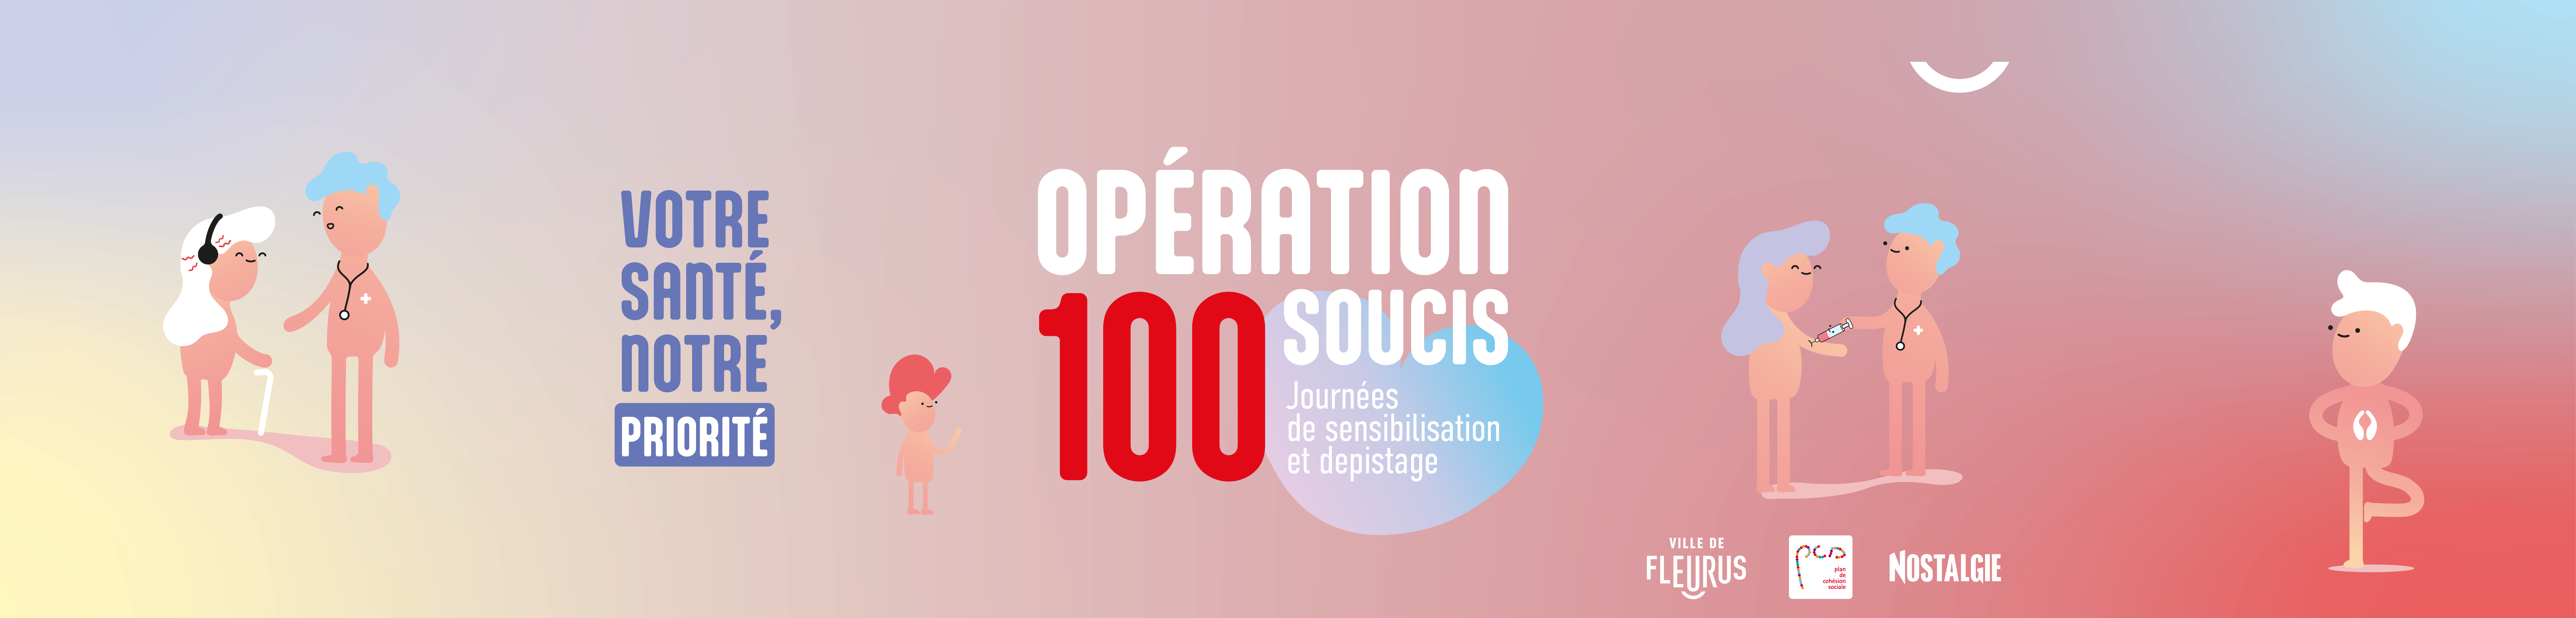 Opération 100 soucis - Banner event site web - 2500x600px